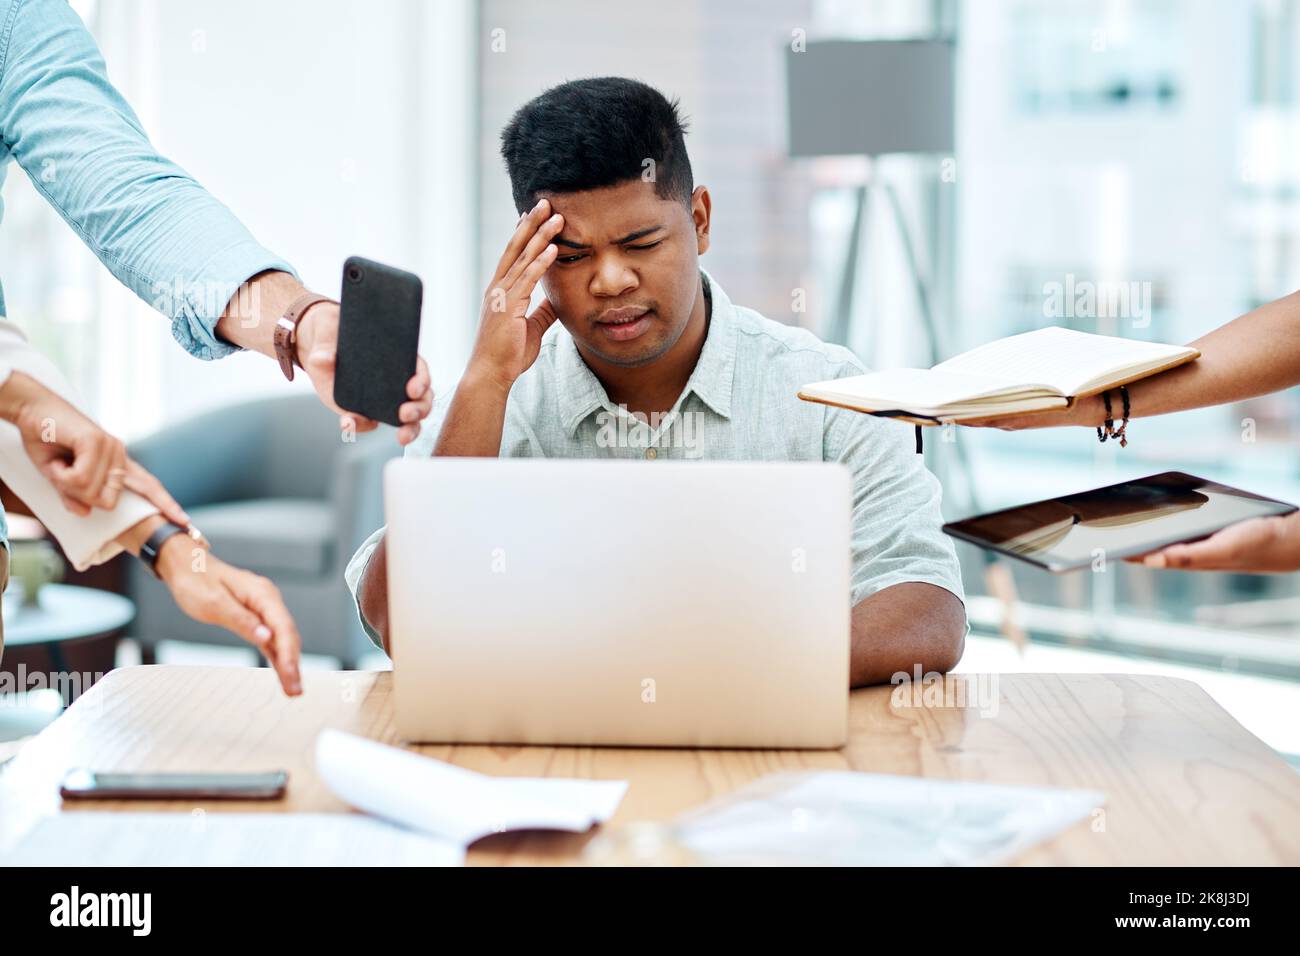 Bei der Arbeit überfordert zu sein kann Ihre Produktivität und Ihre Gesundheit schädigen. Ein junger Geschäftsmann, der gestresst in einem anspruchsvollen Büroumfeld aussieht. Stockfoto